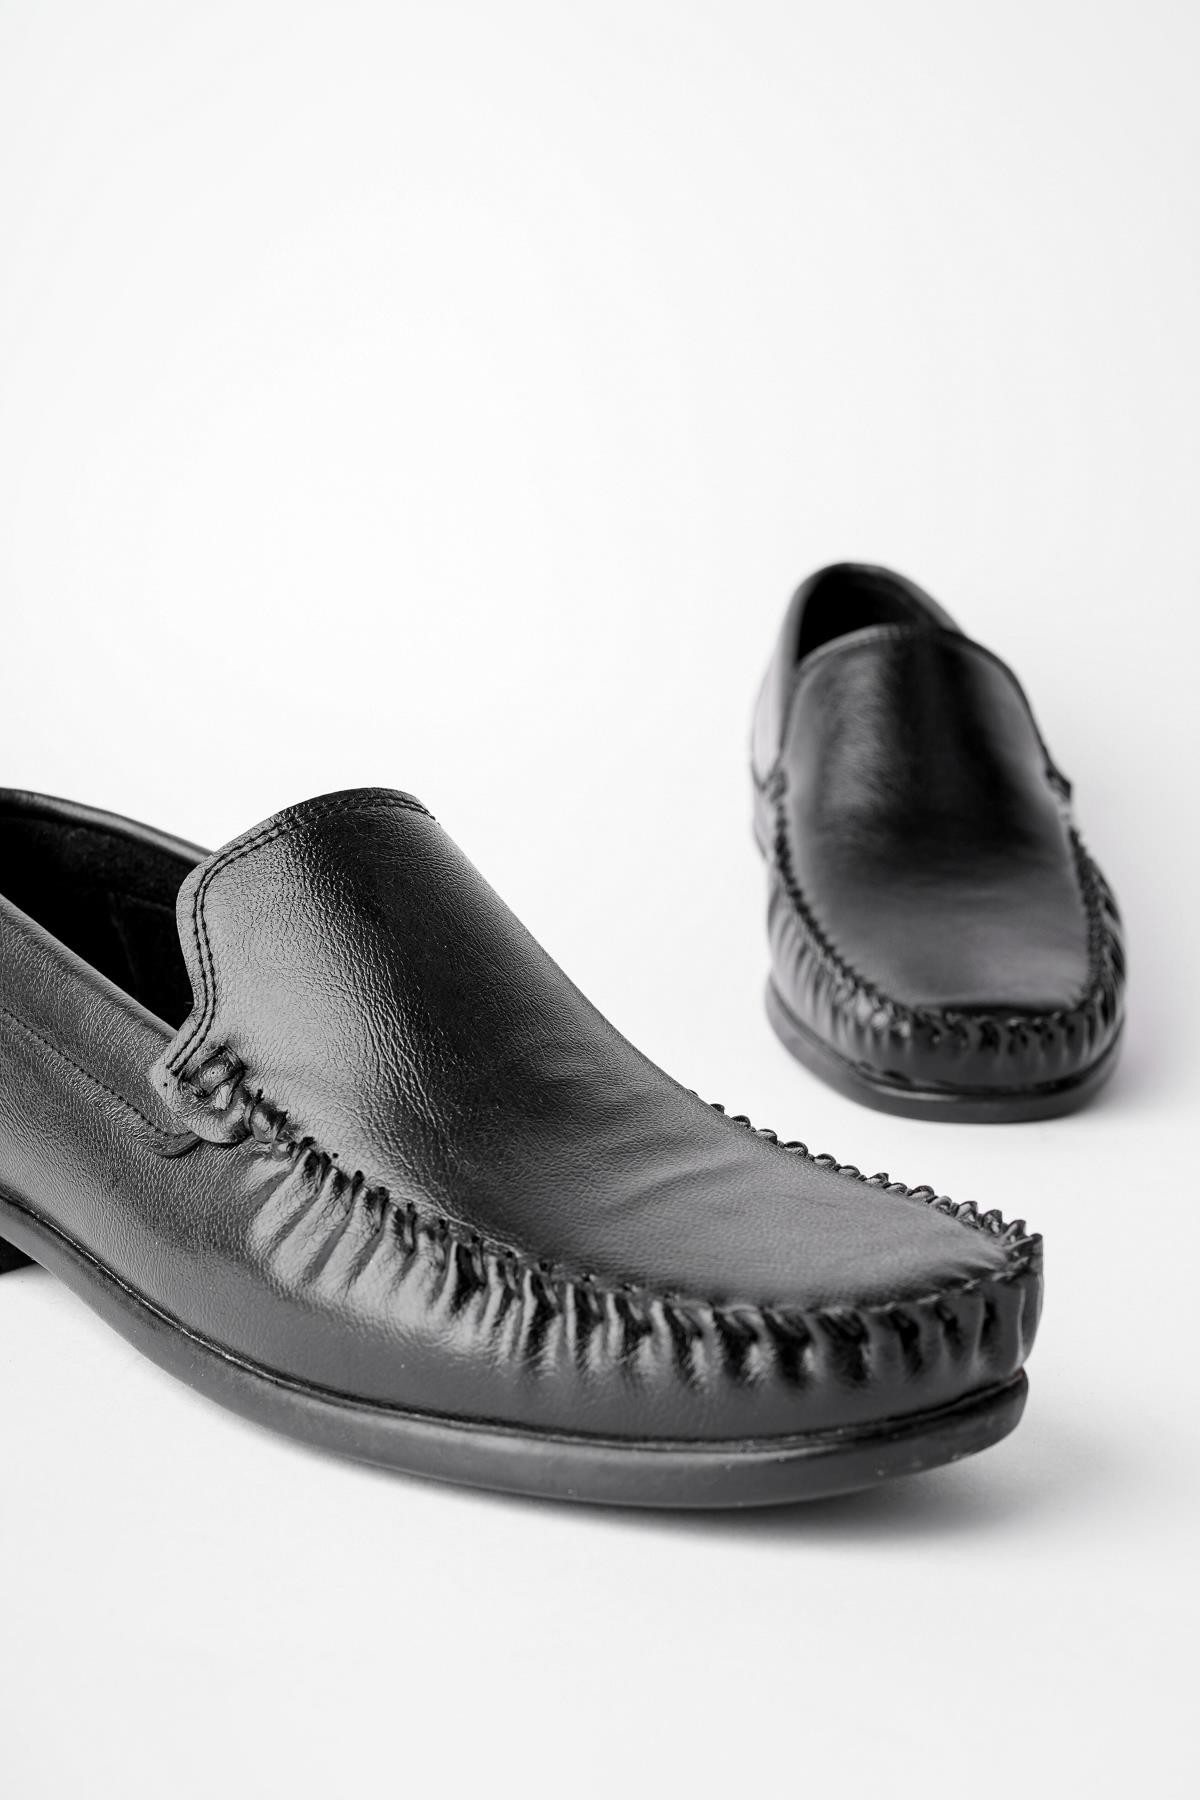 Muggo MARK Garantili Erkek Günlük Klasik Casual Rahat Ortopedik Ayakkabı